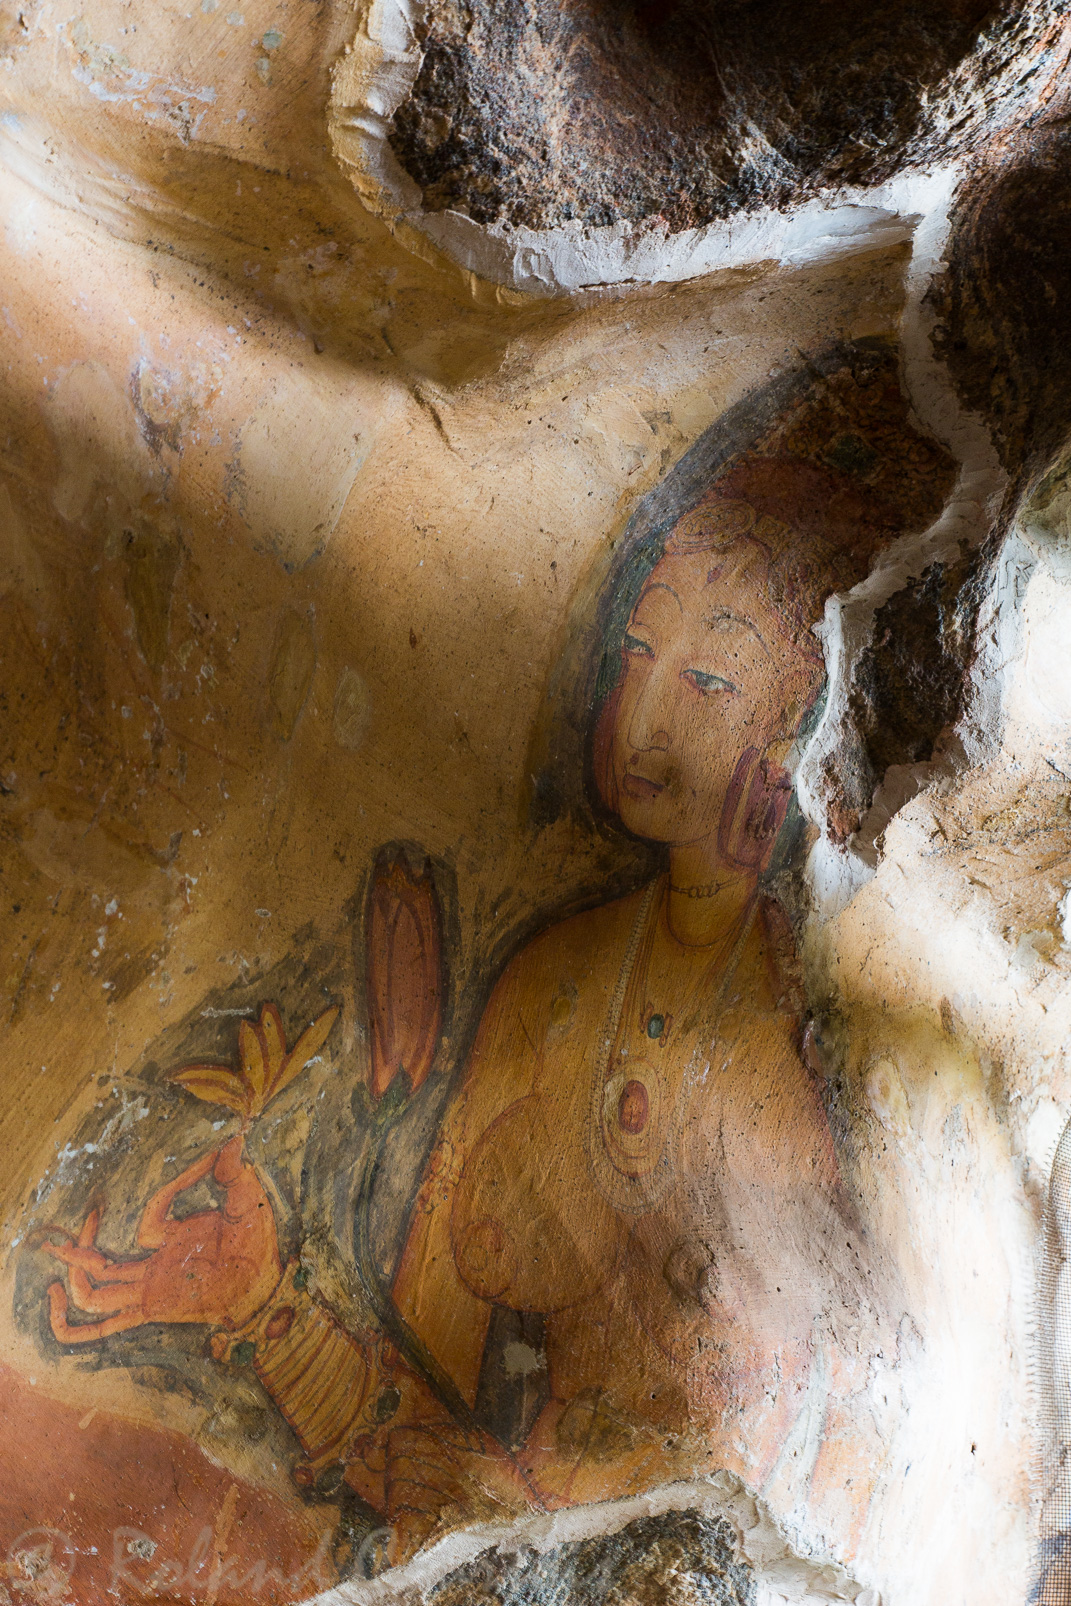 Sigiriya. Fresque des Demoiselles qui étalent leurs charmes dans une dépression de la roche. Elles sont identifiées comme des princesses ou des apsaras, des nymphes et des compagnes de plaisir des Dieux.